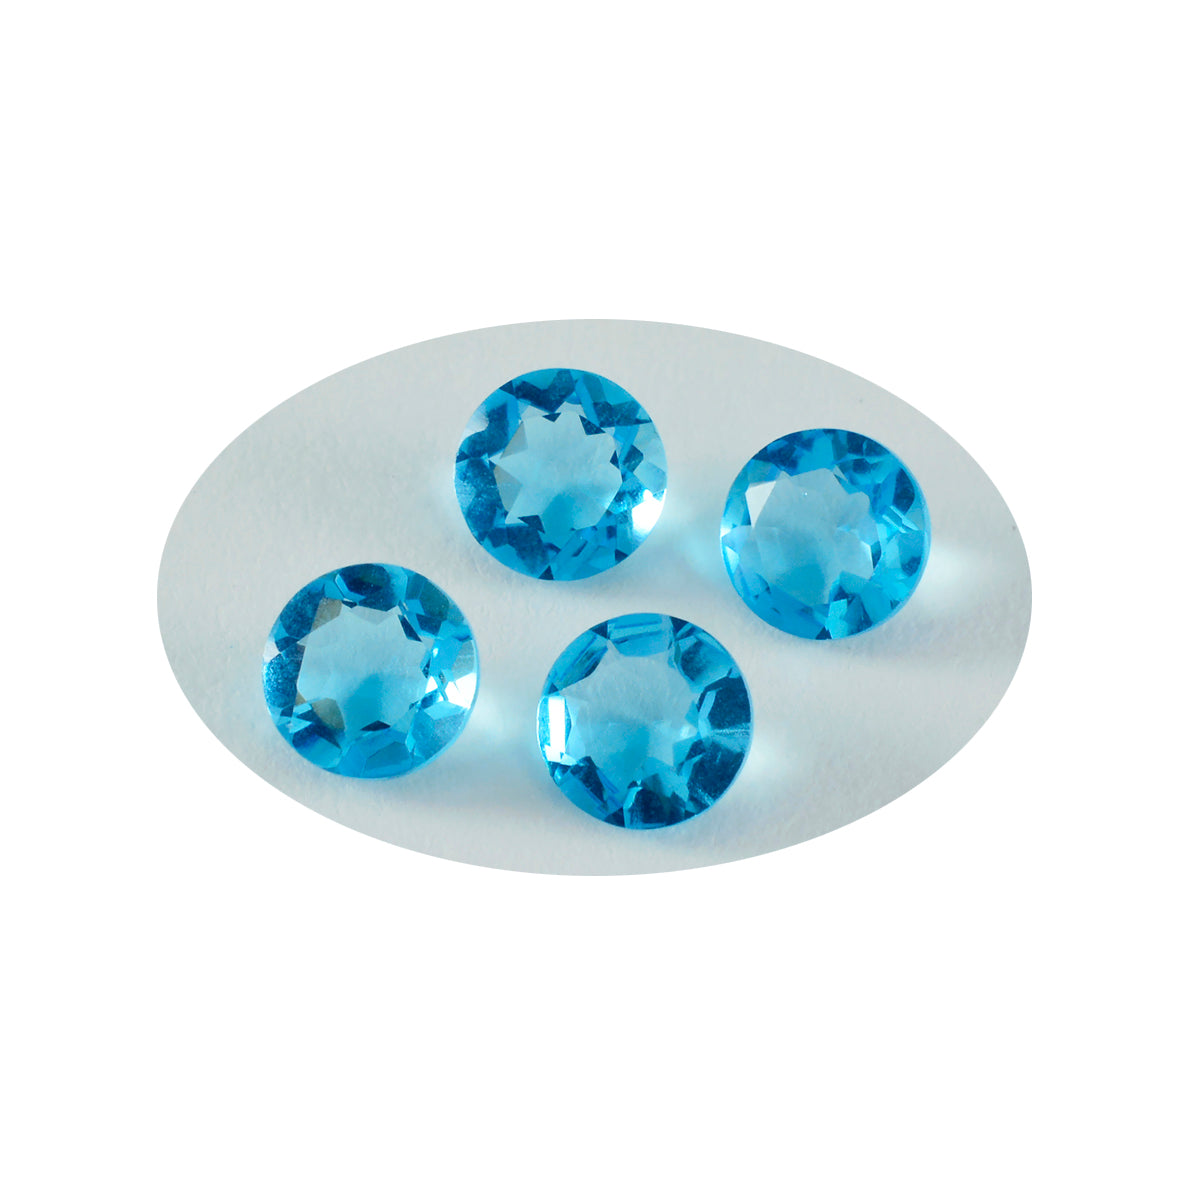 riyogems 1 шт. синий топаз cz граненый 8x8 мм круглая форма милый качественный свободный драгоценный камень